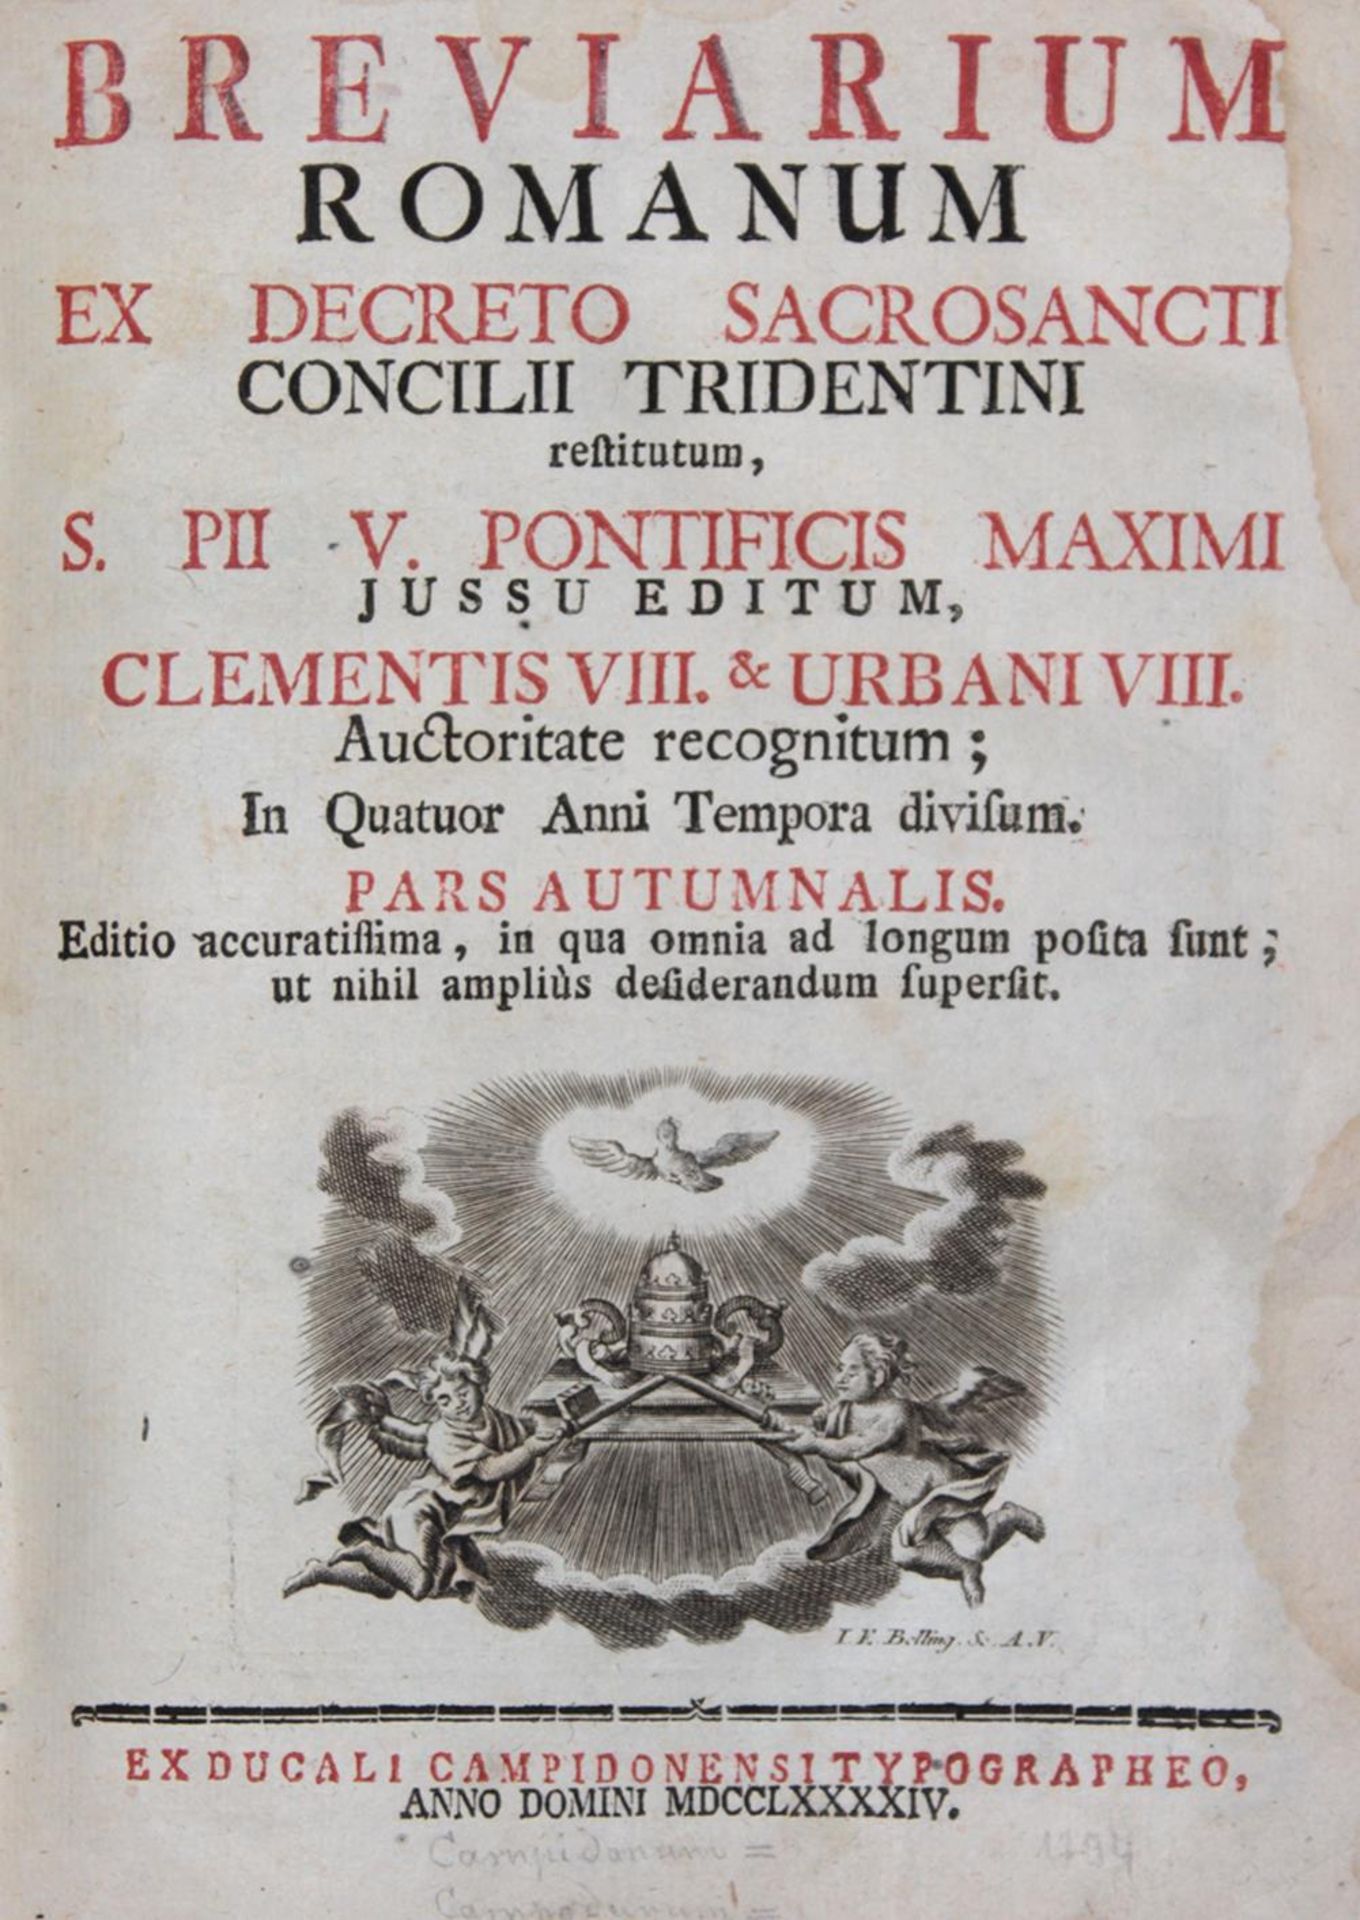 Breviarium Romanum.Breviarium Romanum. Sammlung von 4 Teilbänden. 8°-Gr.8°. Ldrbde.Brevi - Image 2 of 2